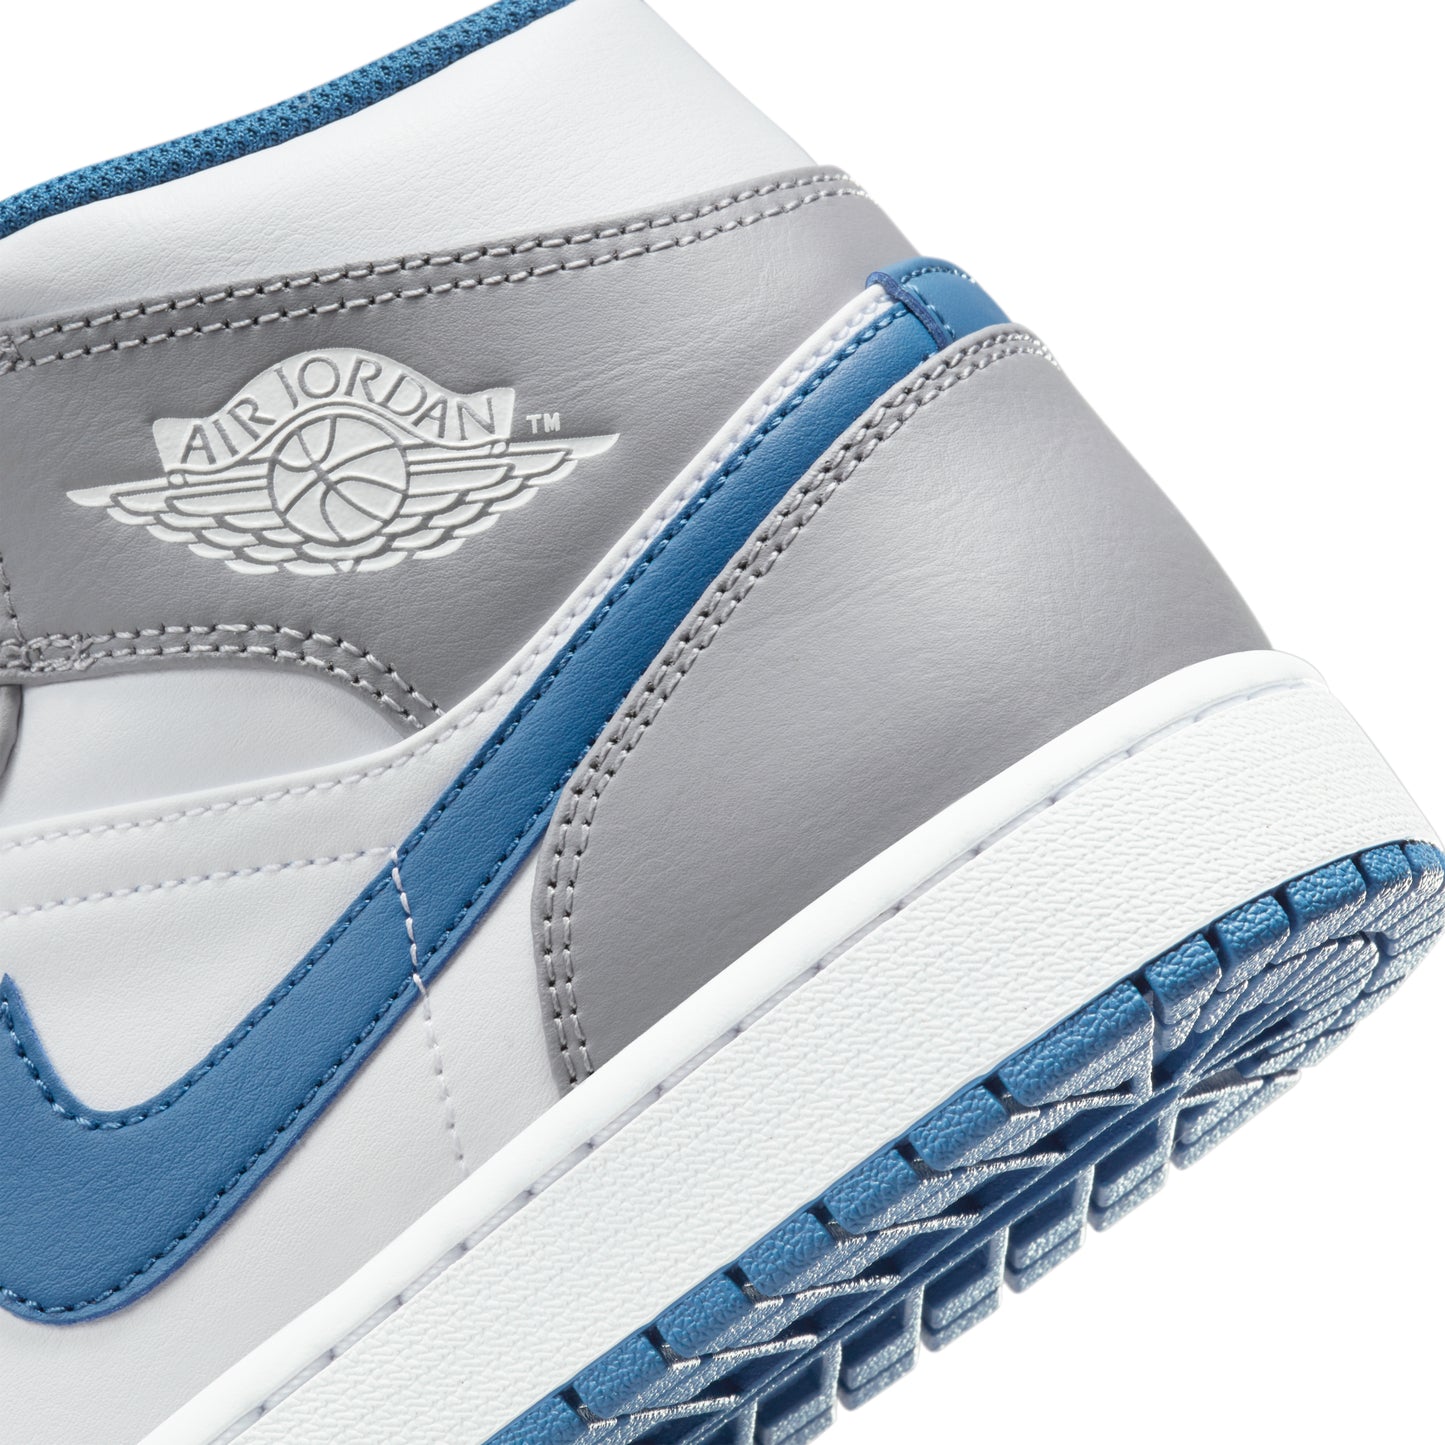 Nike Air Jordan 1 Mid True Blue